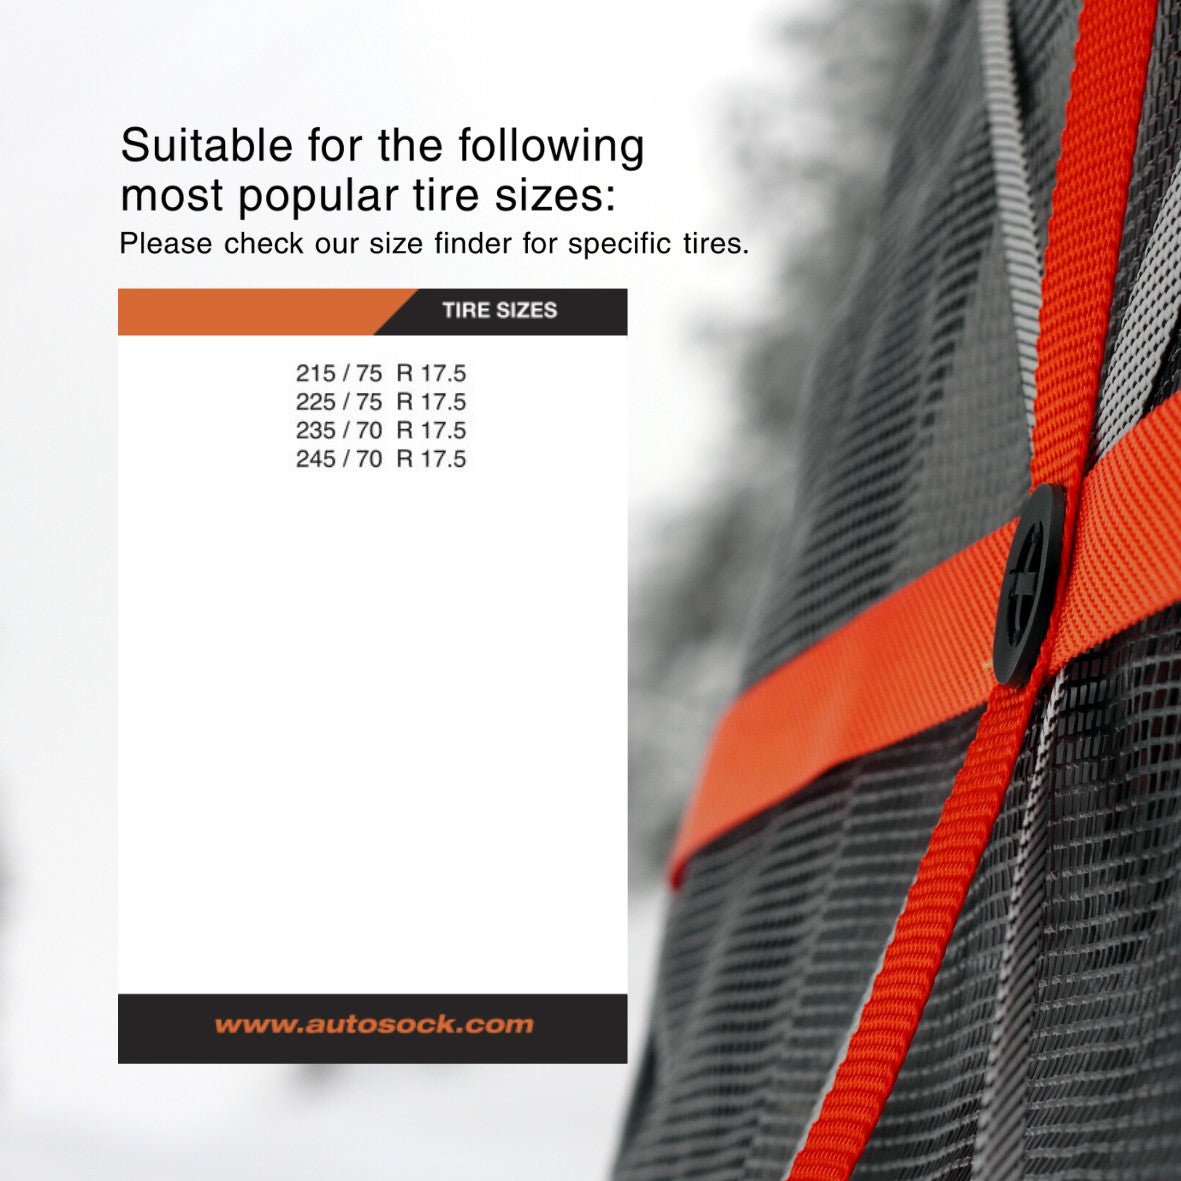 Tabla de tallas simple para AutoSock para productos de camiones AL59 que muestra los tamaños de neumáticos más populares adecuados